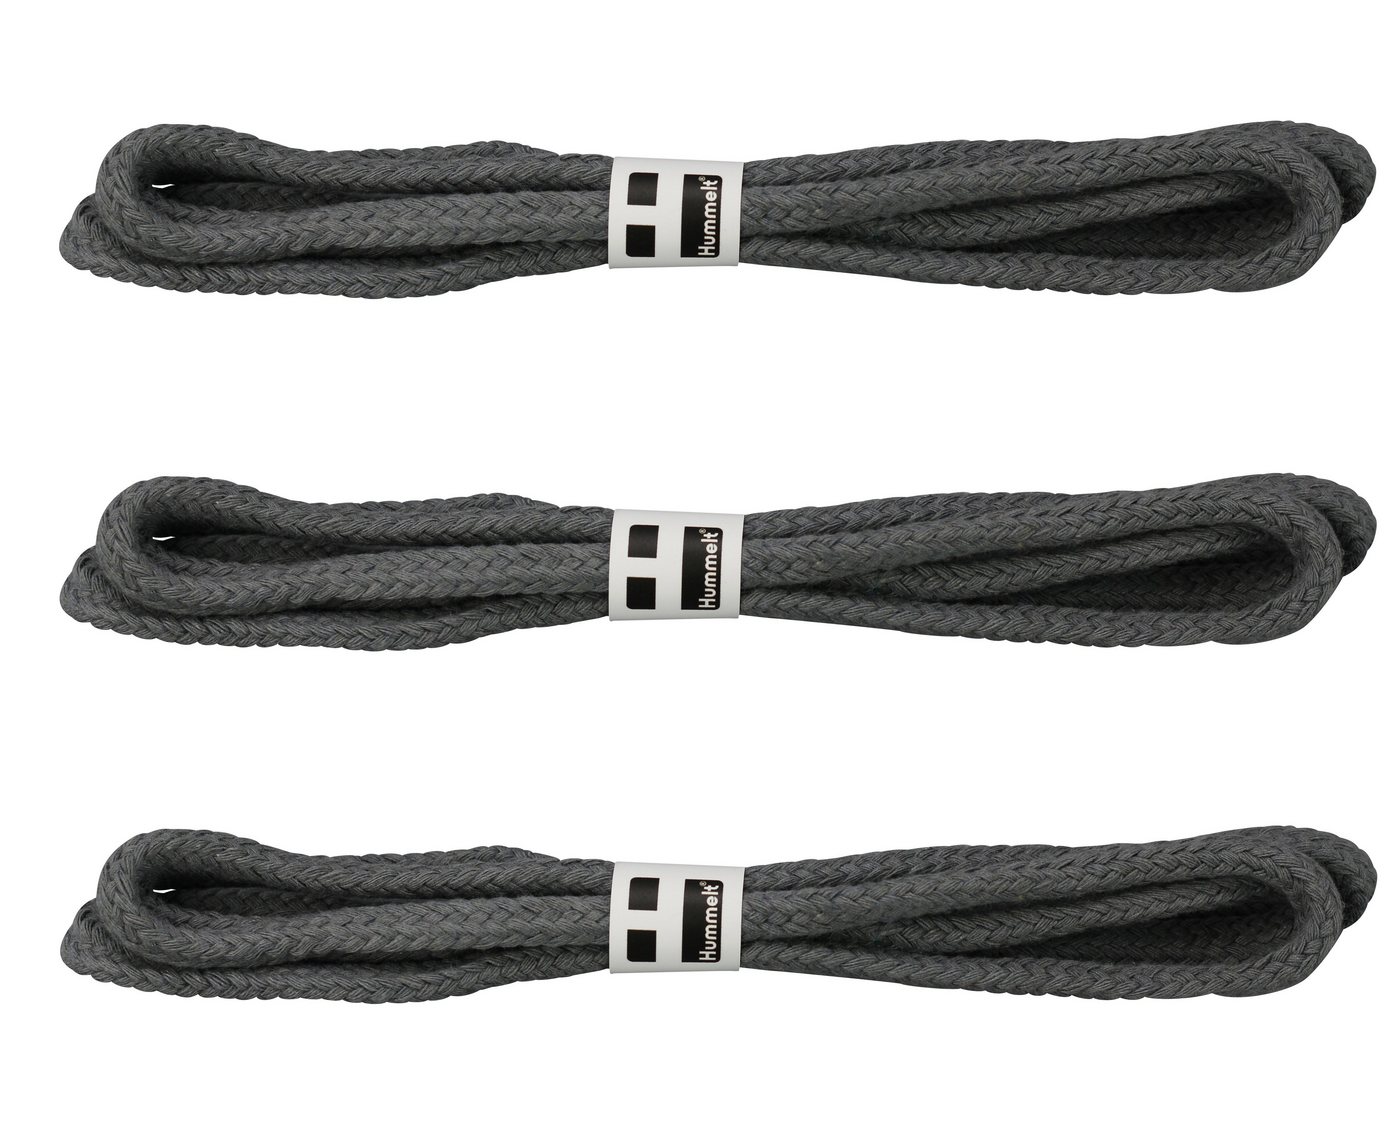 Hummelt® Baumwollseil Seil (8mm Hohlgeflecht (ohne Kern), an jedem Ende mit Kreppband verschlossen), versch. Längen 3x7,5m, versch. Farben beige (Natur), schwarz, rot, grau, weiß von Hummelt®